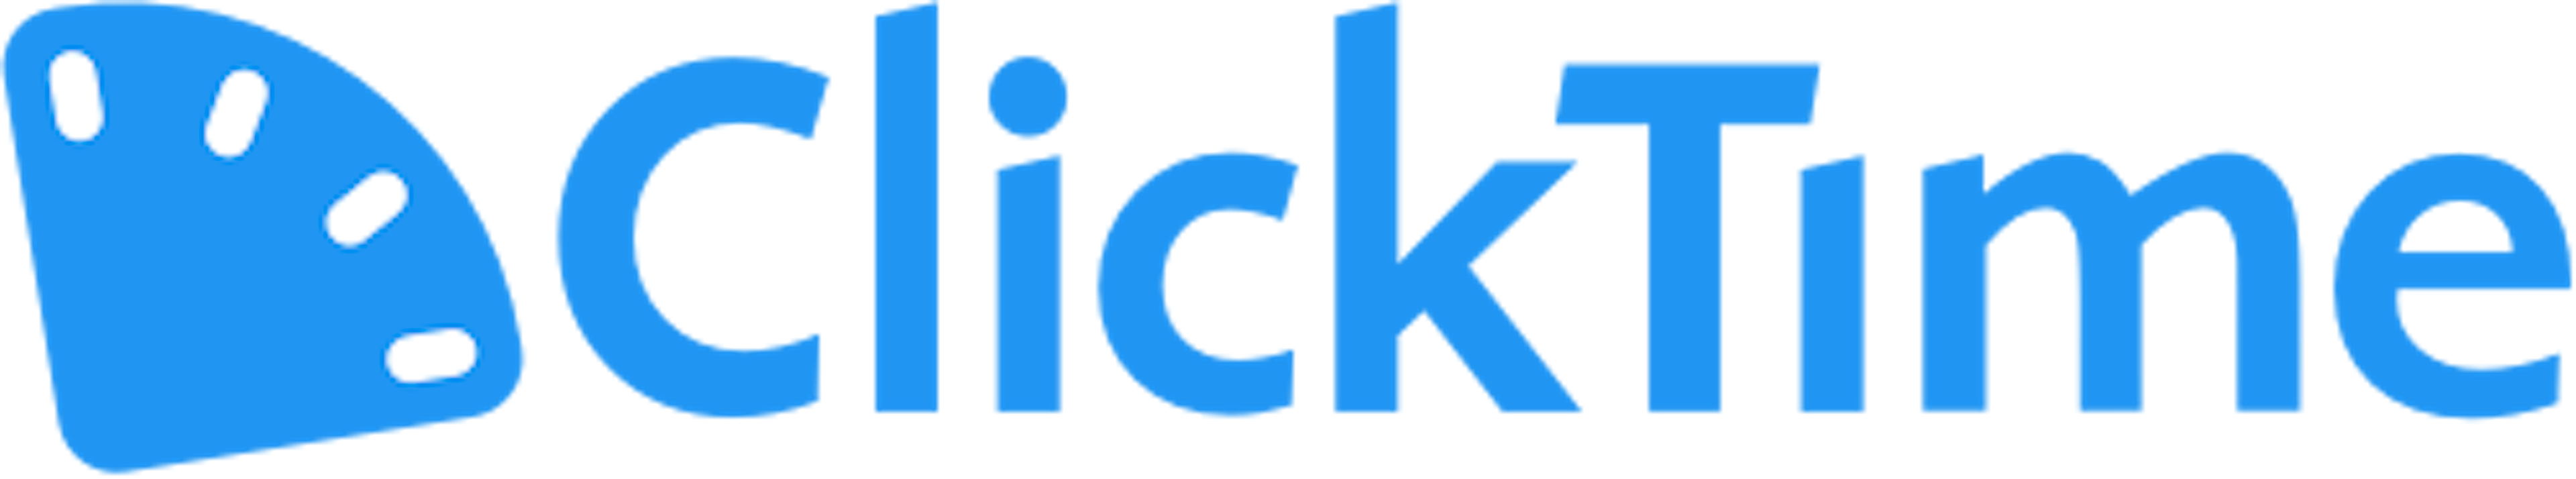 ClickTime Logo